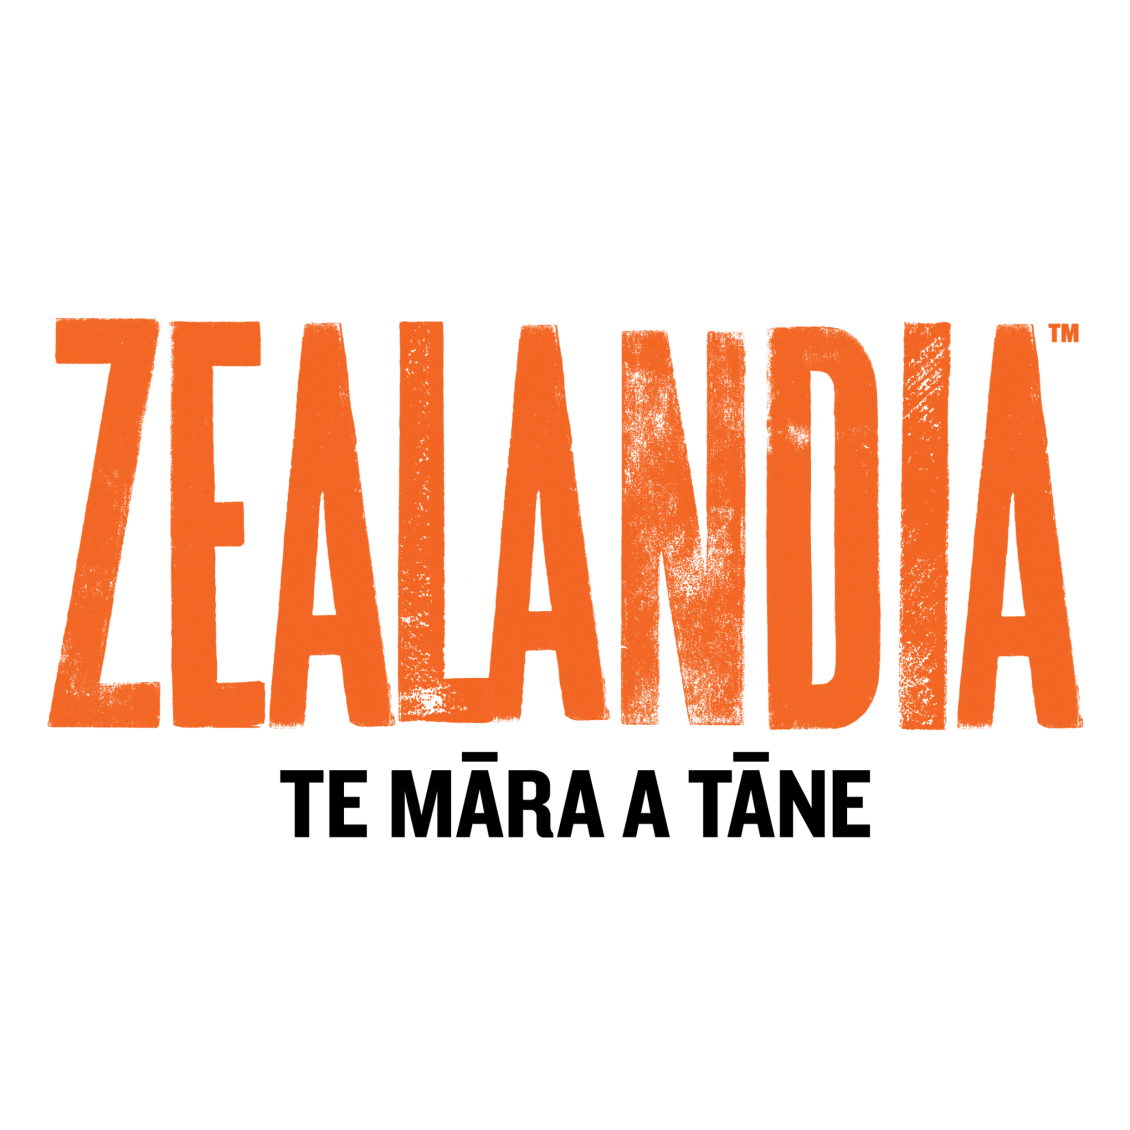 Zealandia logo